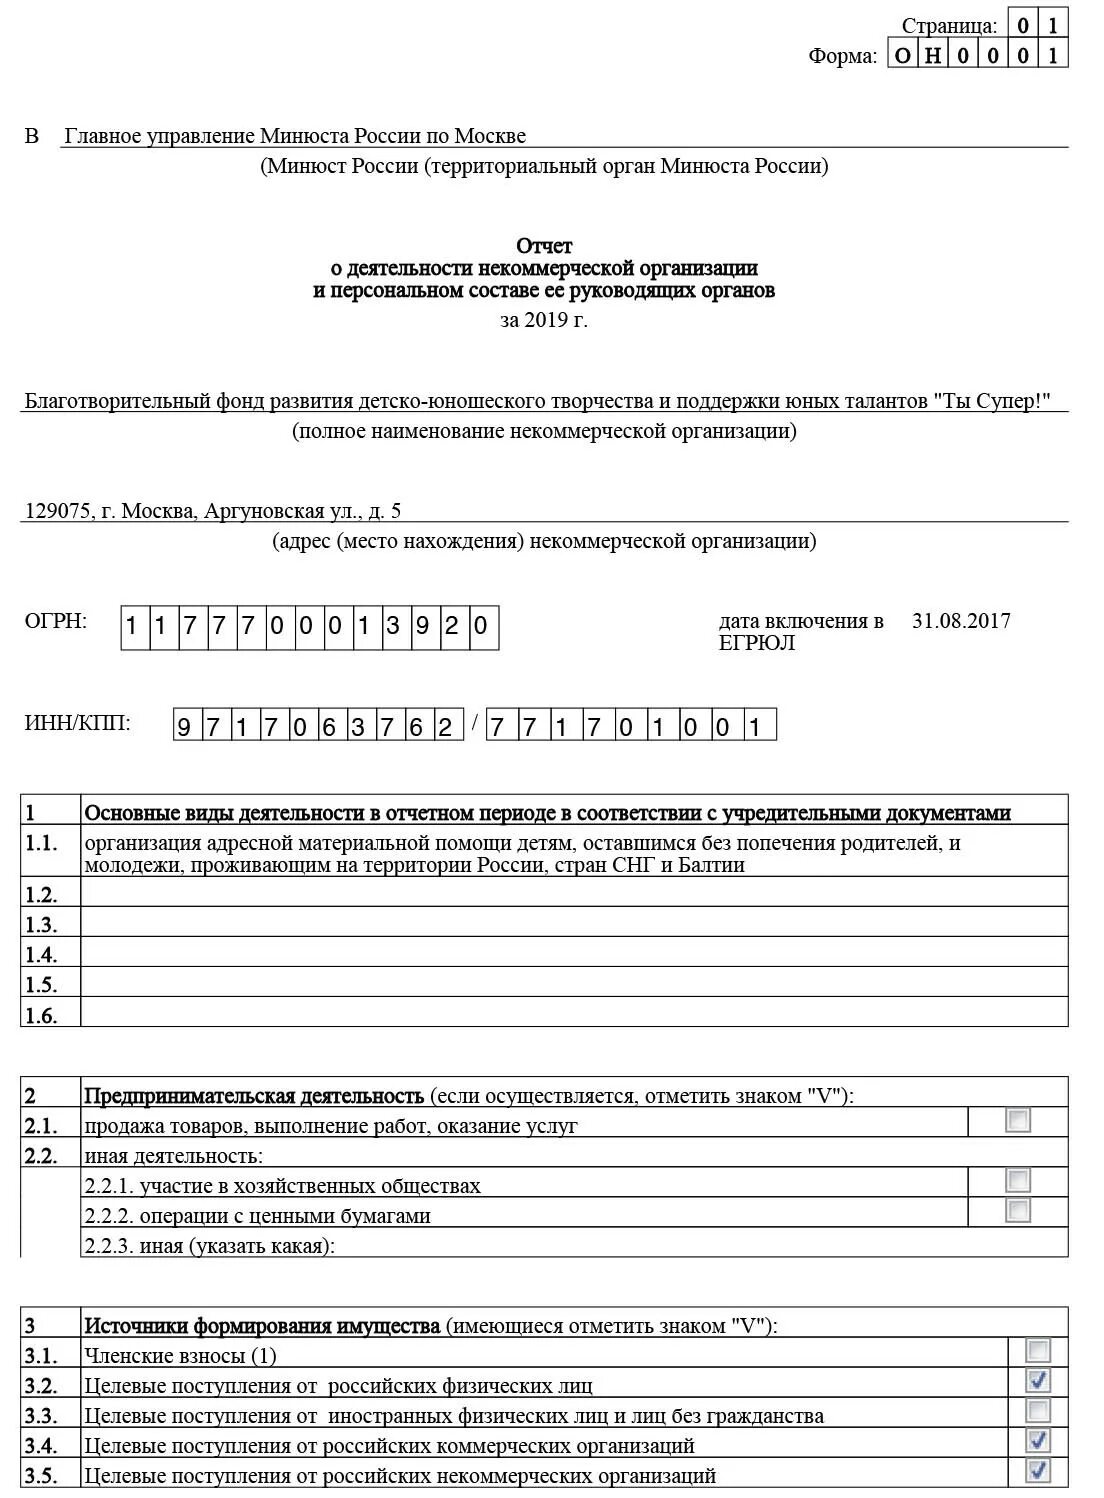 Форма отчета НКО В Минюст в 2021 году. Форма отчета в юстицию для НКО. Отчет о деятельности некоммерческой организации в Минюст. Отчет о деятельности некоммерческой организации в Минюст образец.